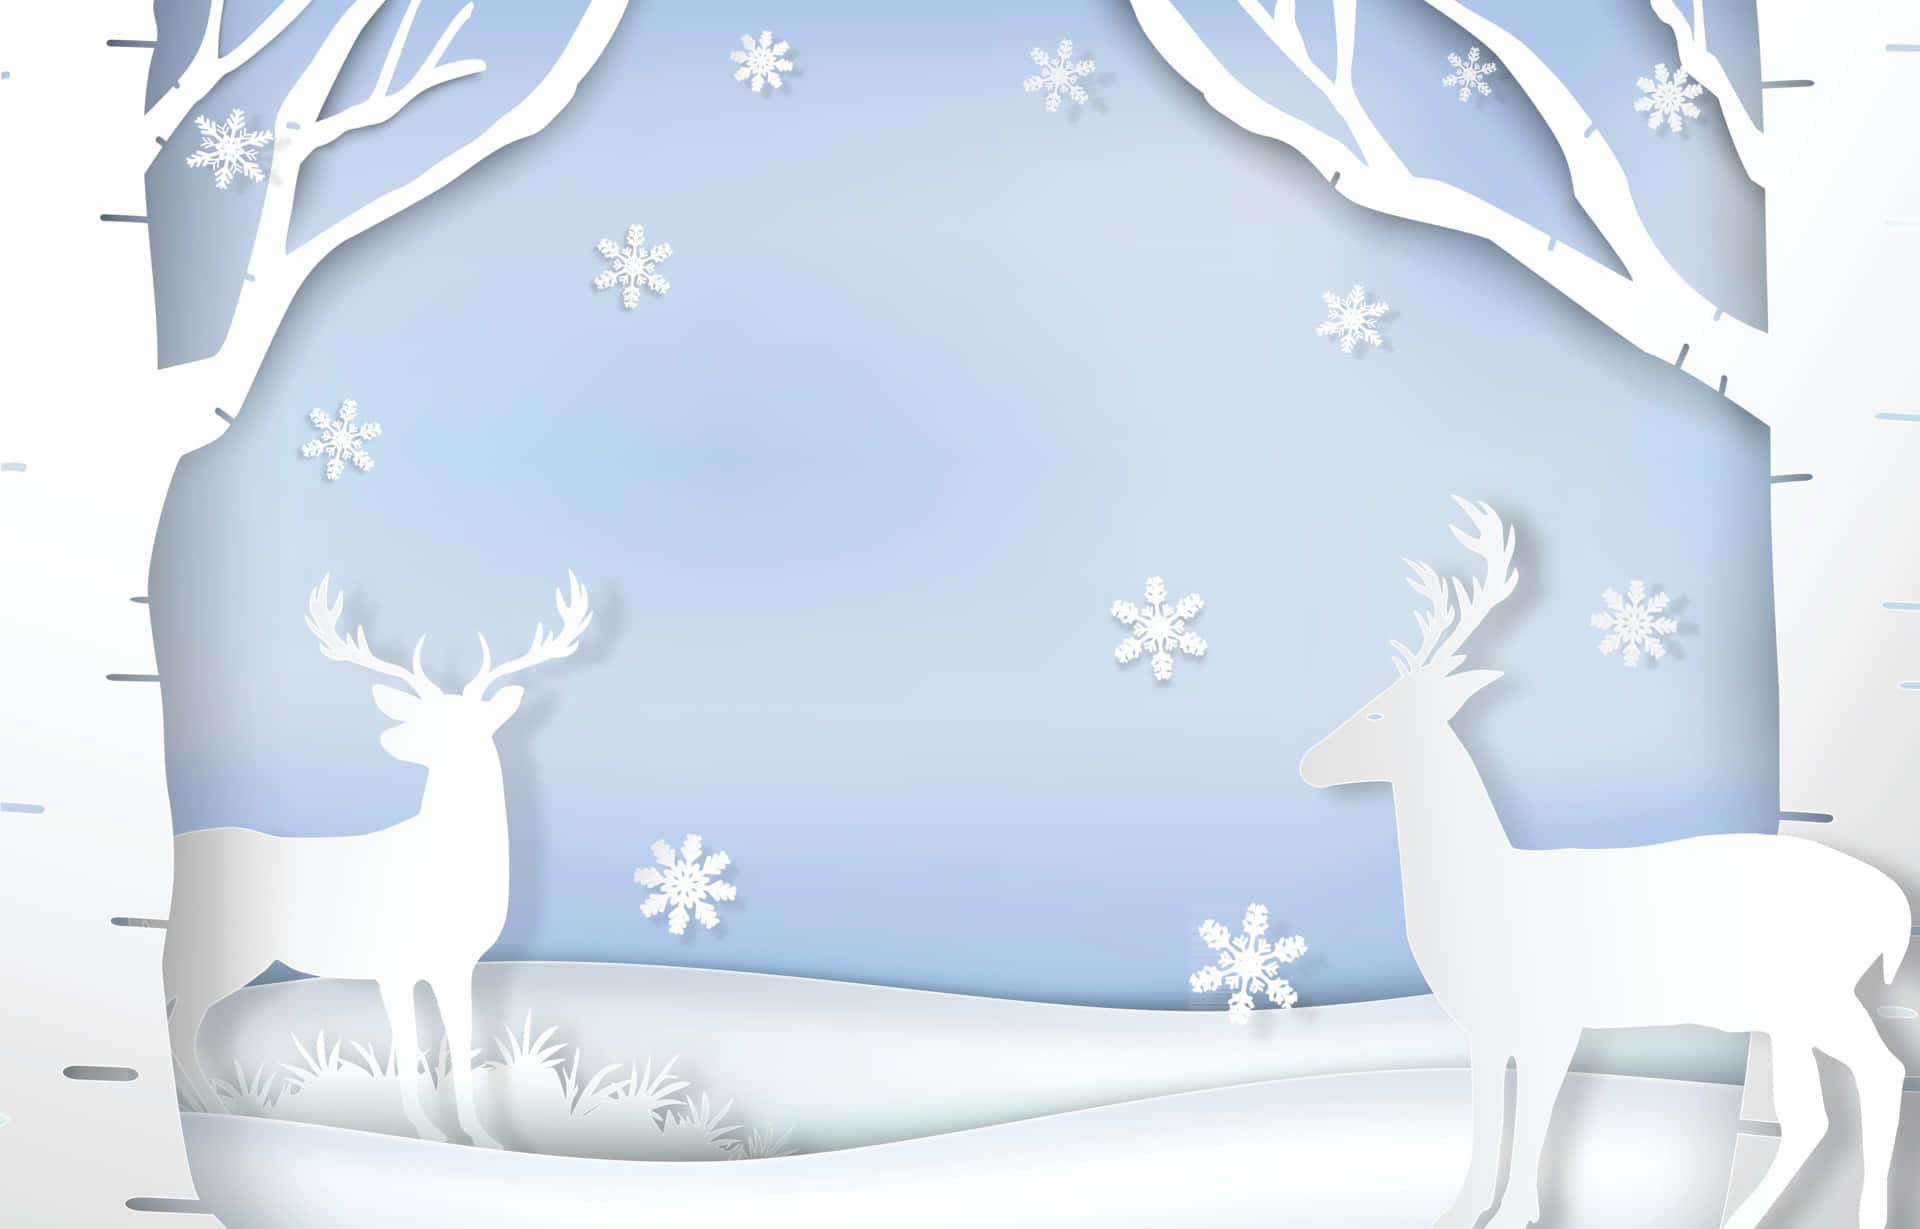 Go on a Snowy Adventure with Santa's Reindeer